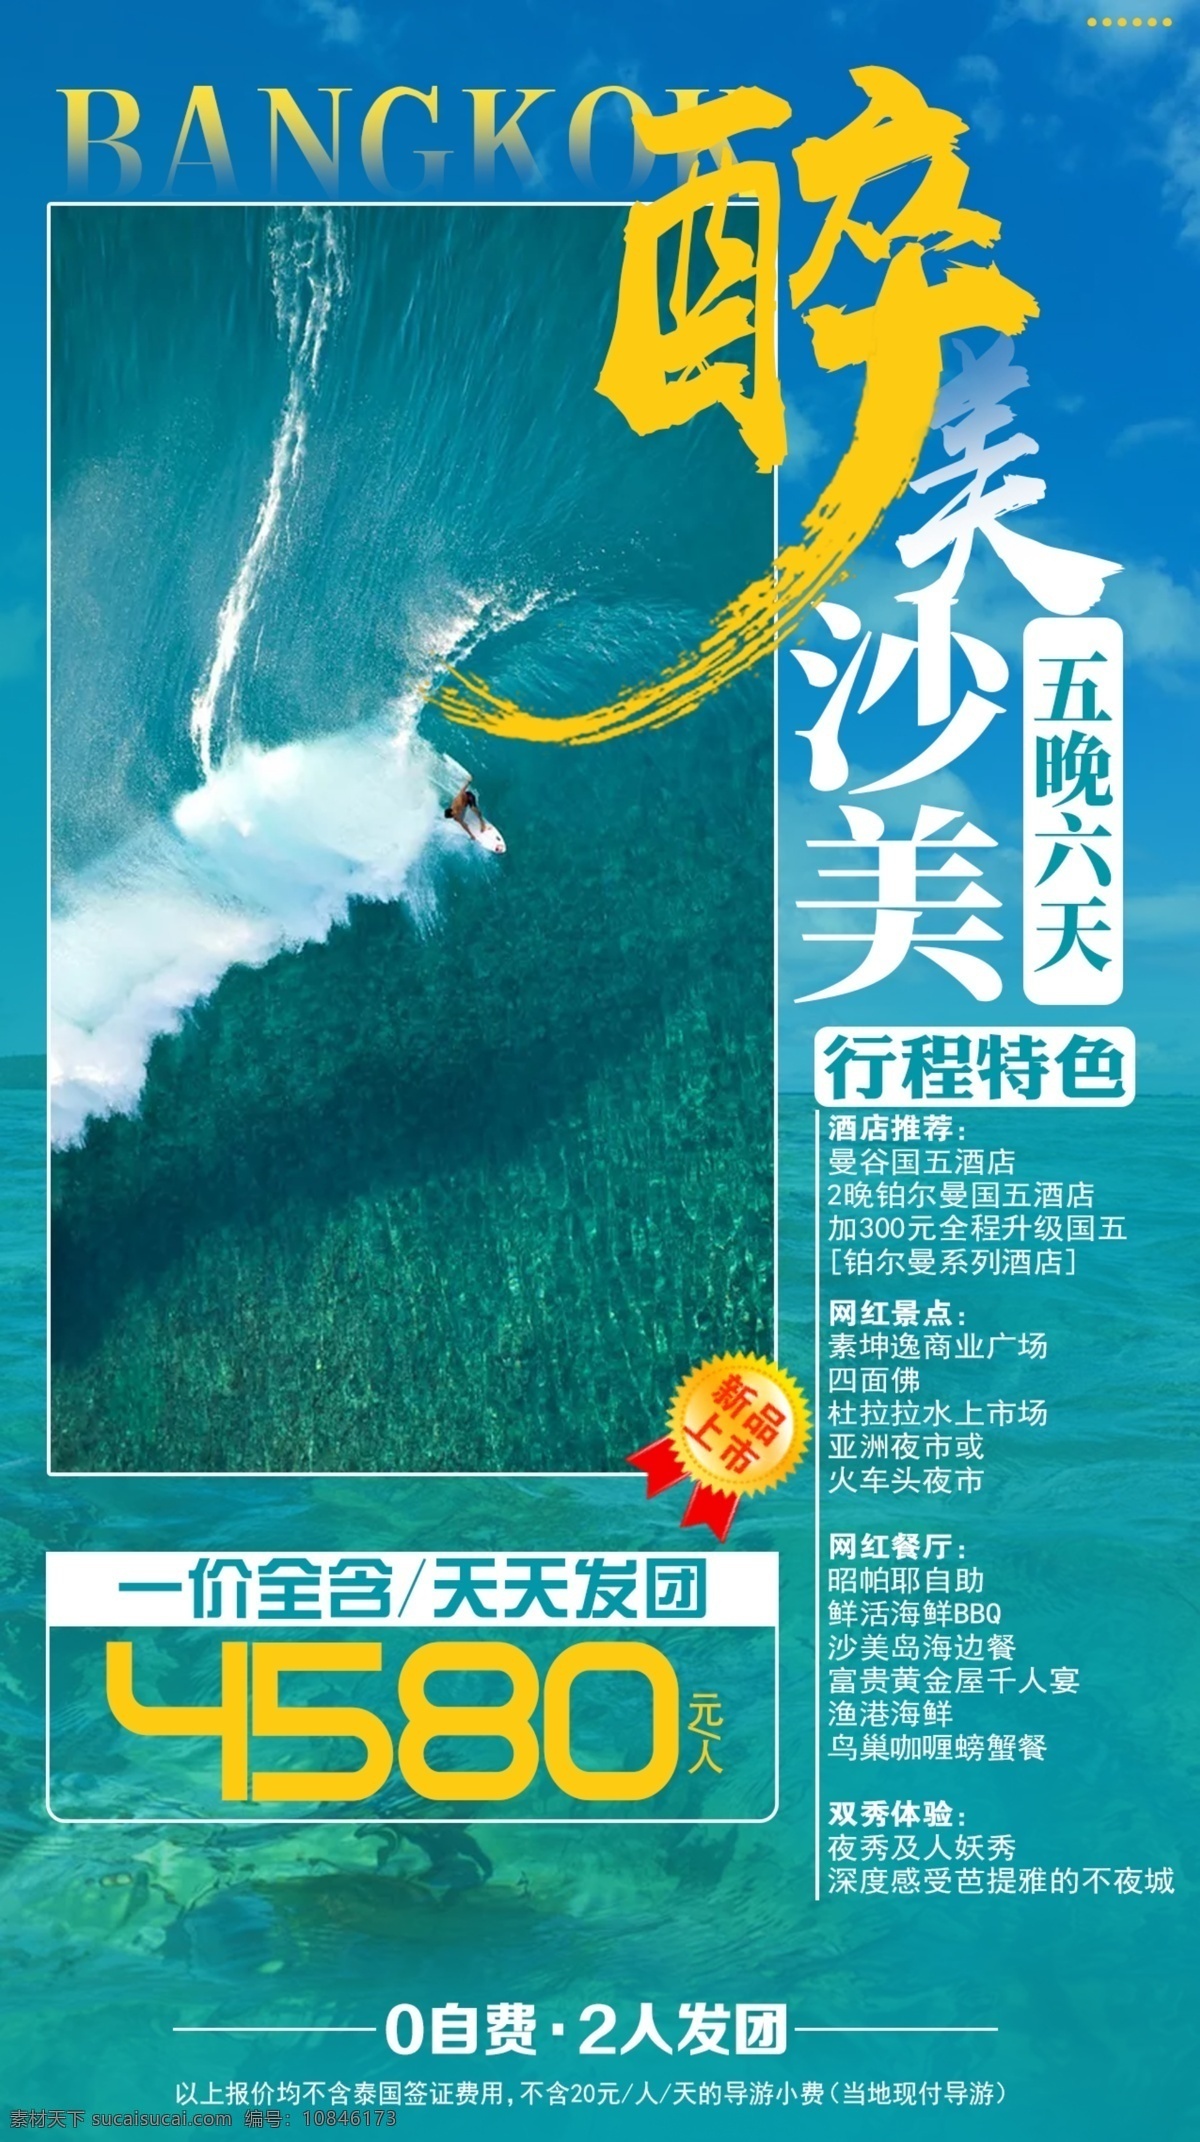 醉美沙美 曼谷 旅游 海报 宣传 海岛 行走 彩页 印刷 曼谷苏梅岛